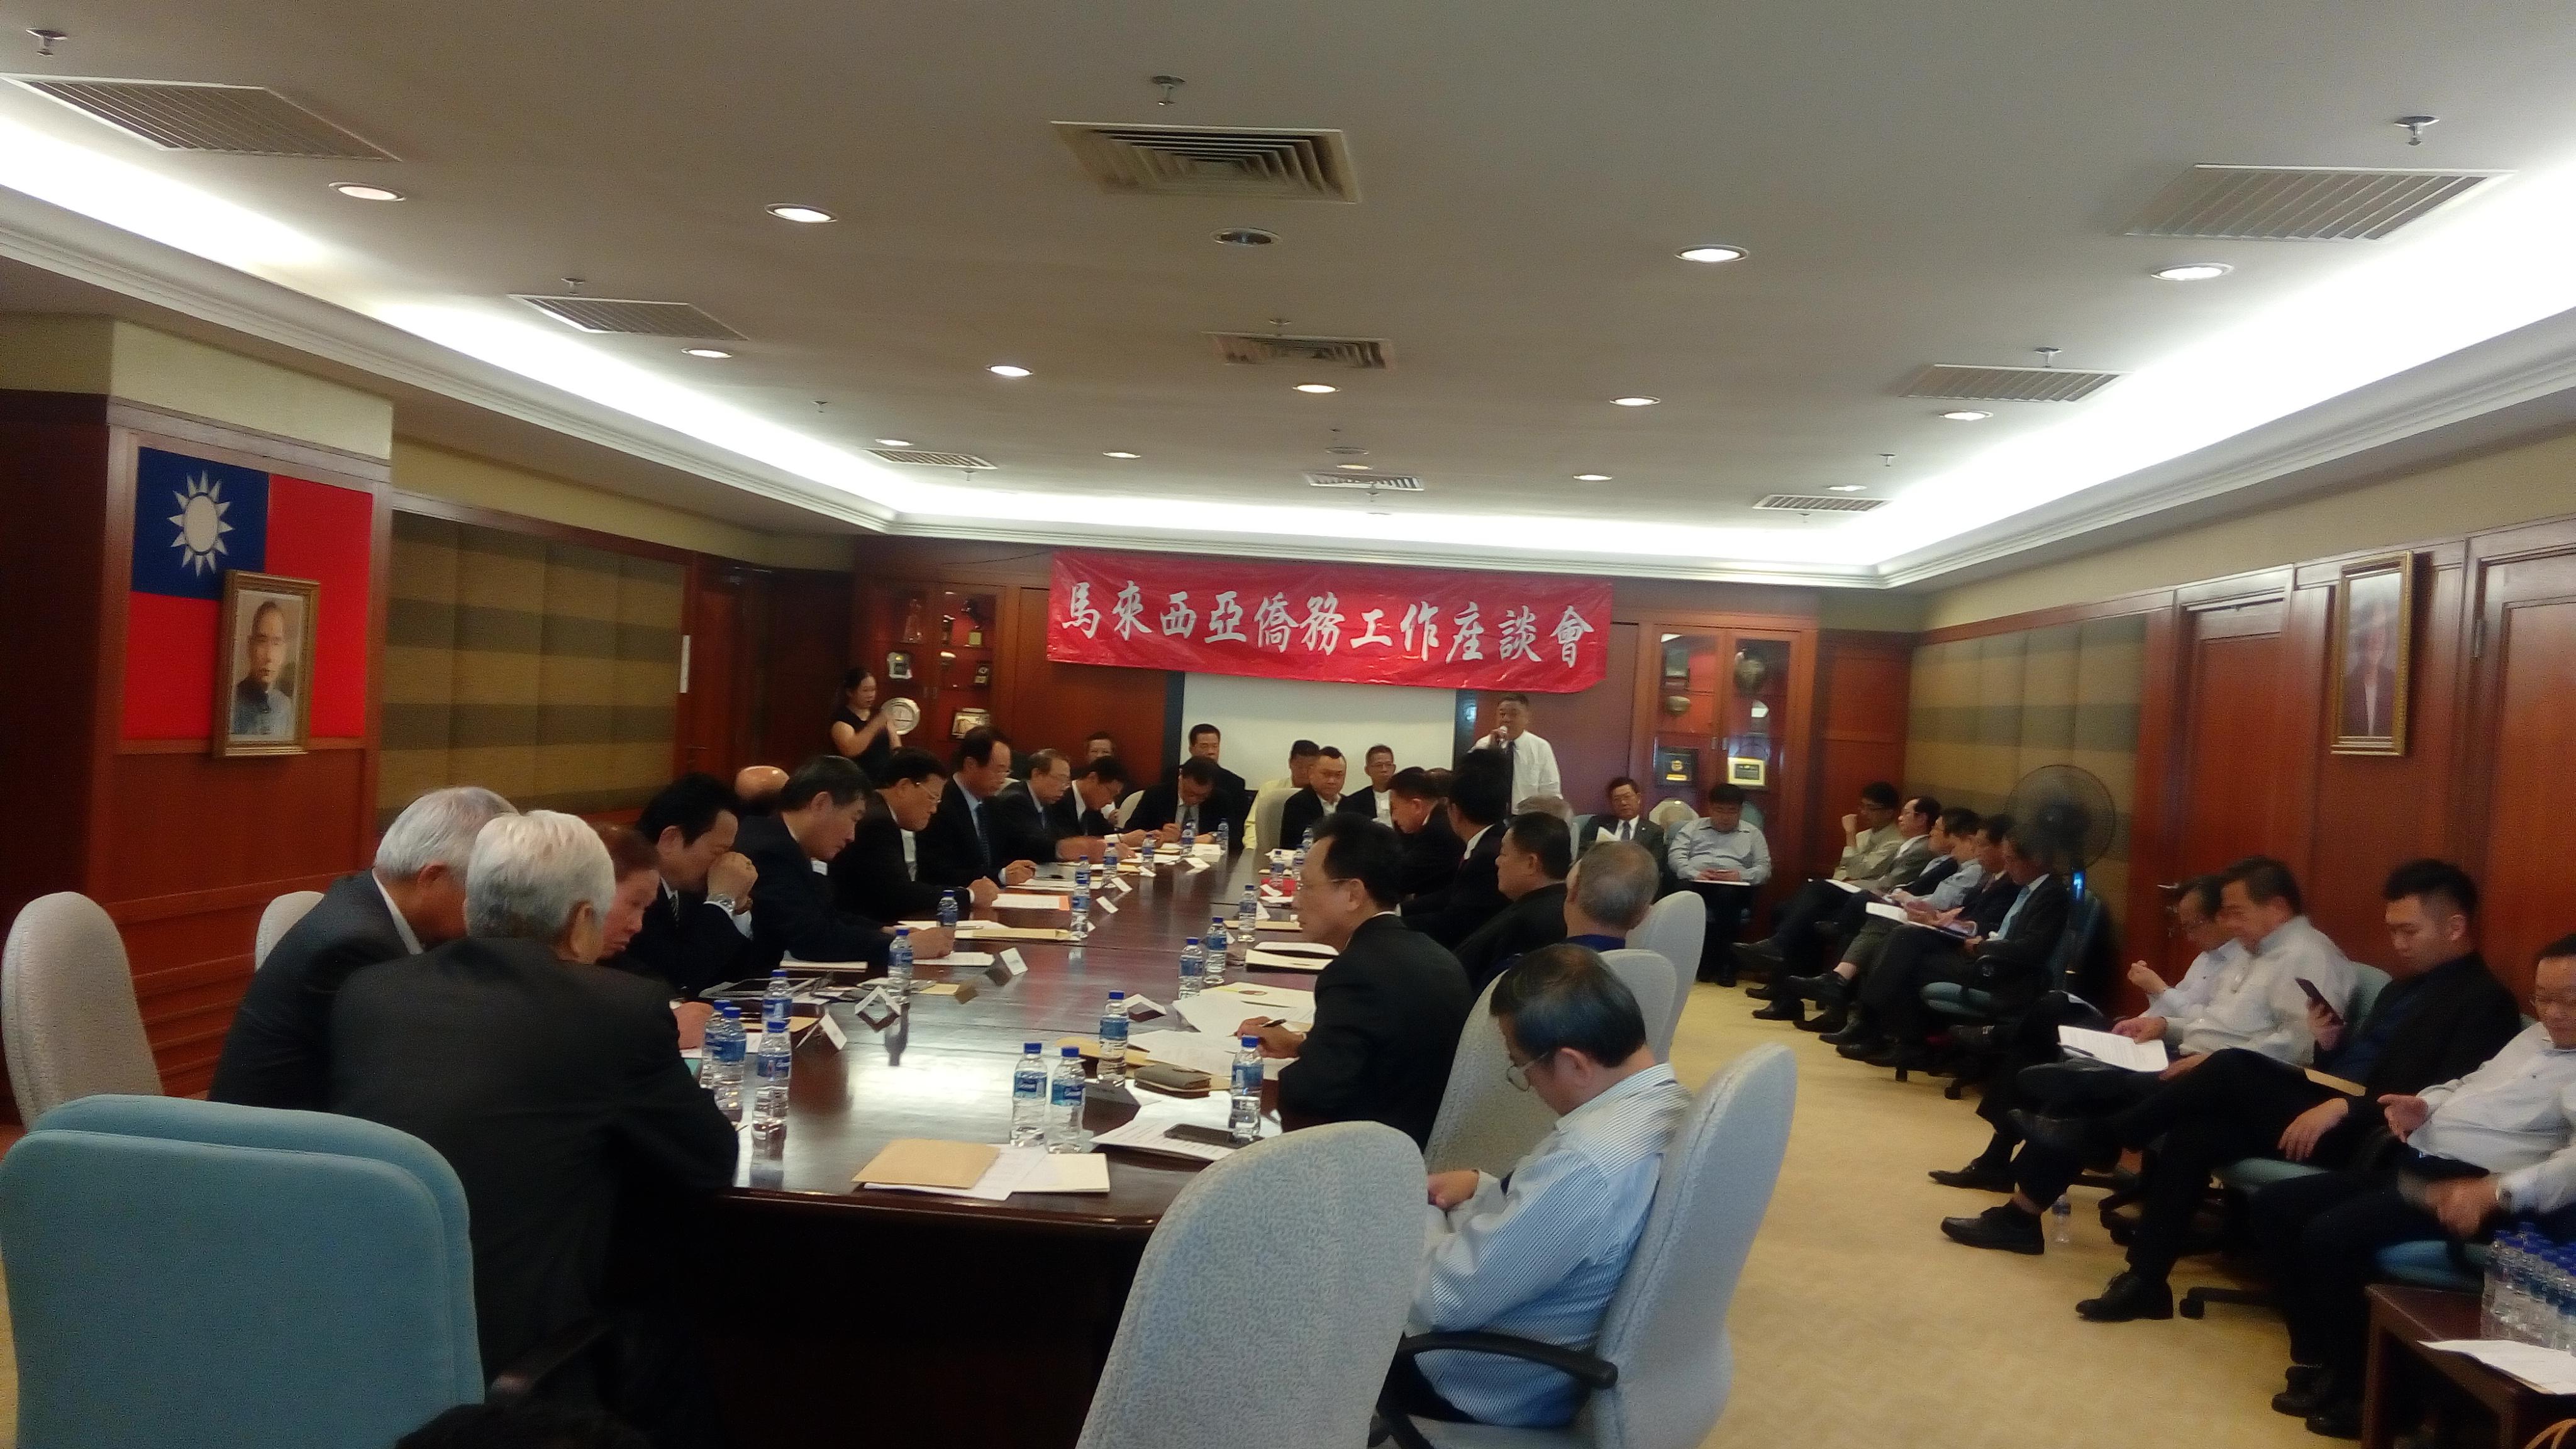 2017年馬來西亞僑務工作座談會於駐馬來西亞代表處會議室召開情形。